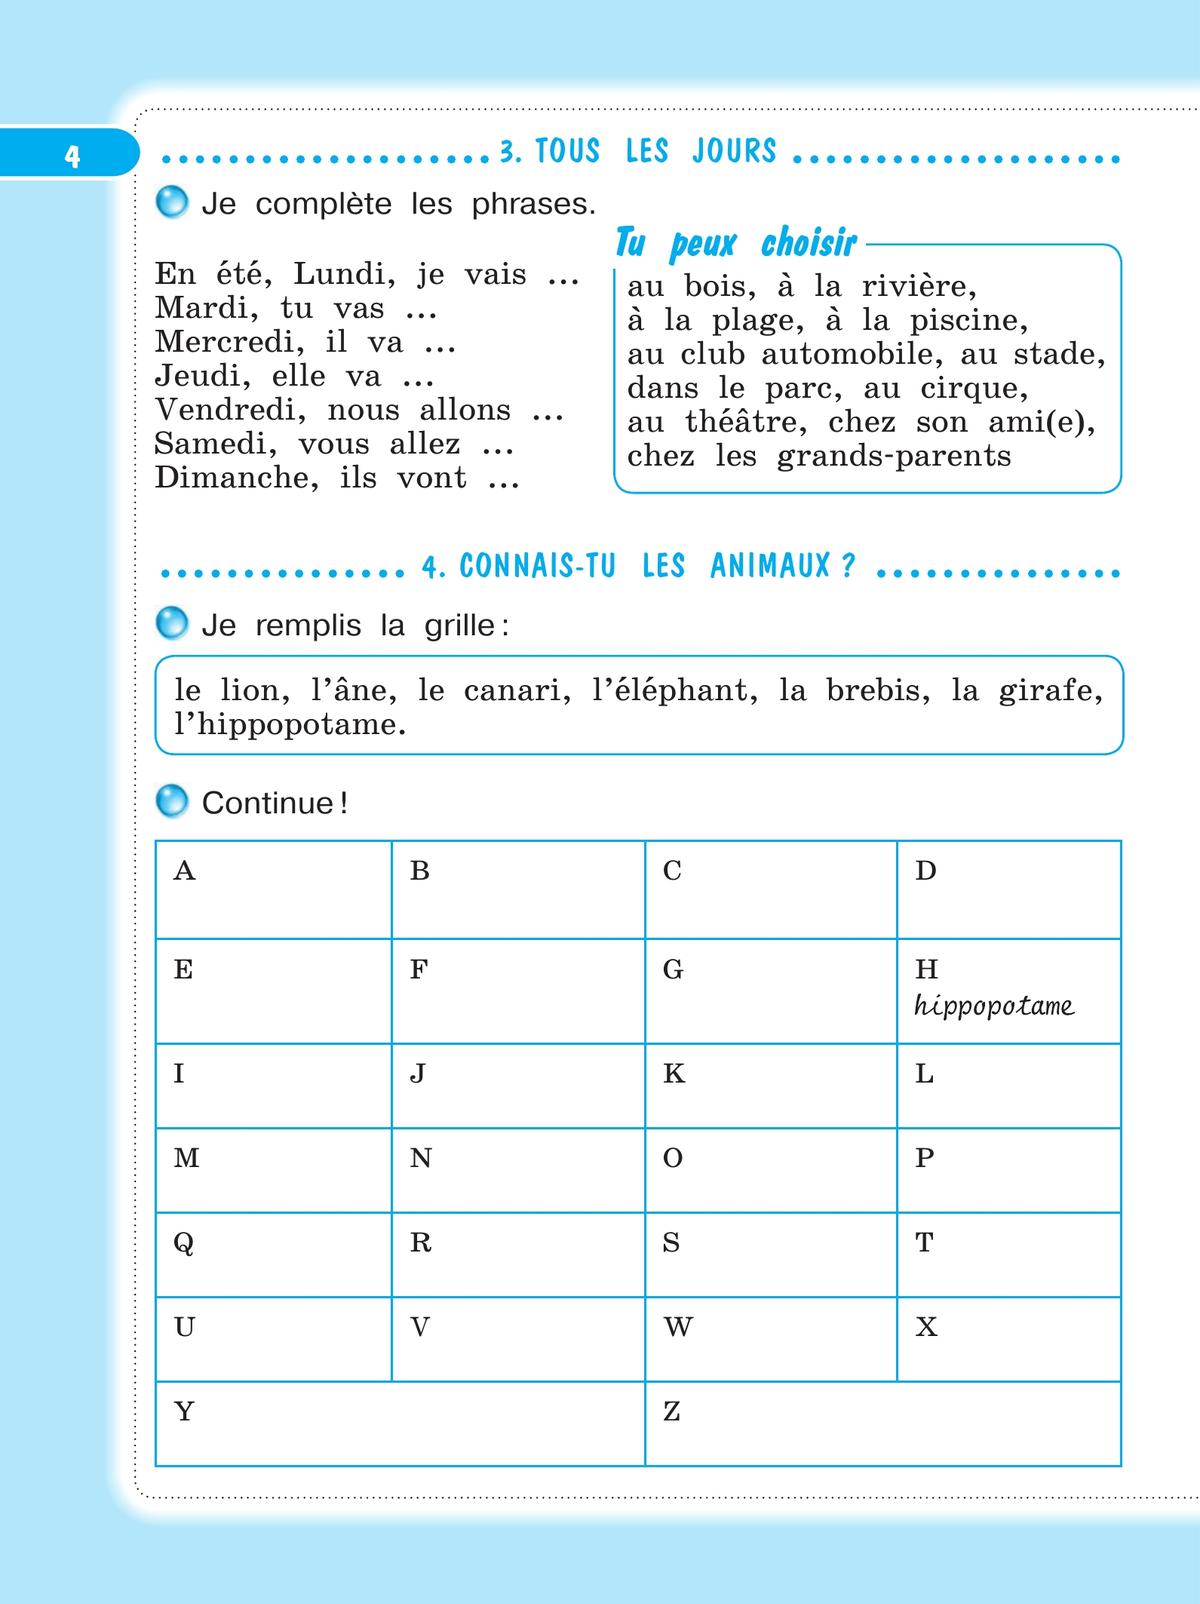 Французский язык. Рабочая тетрадь. 4 класс. 9